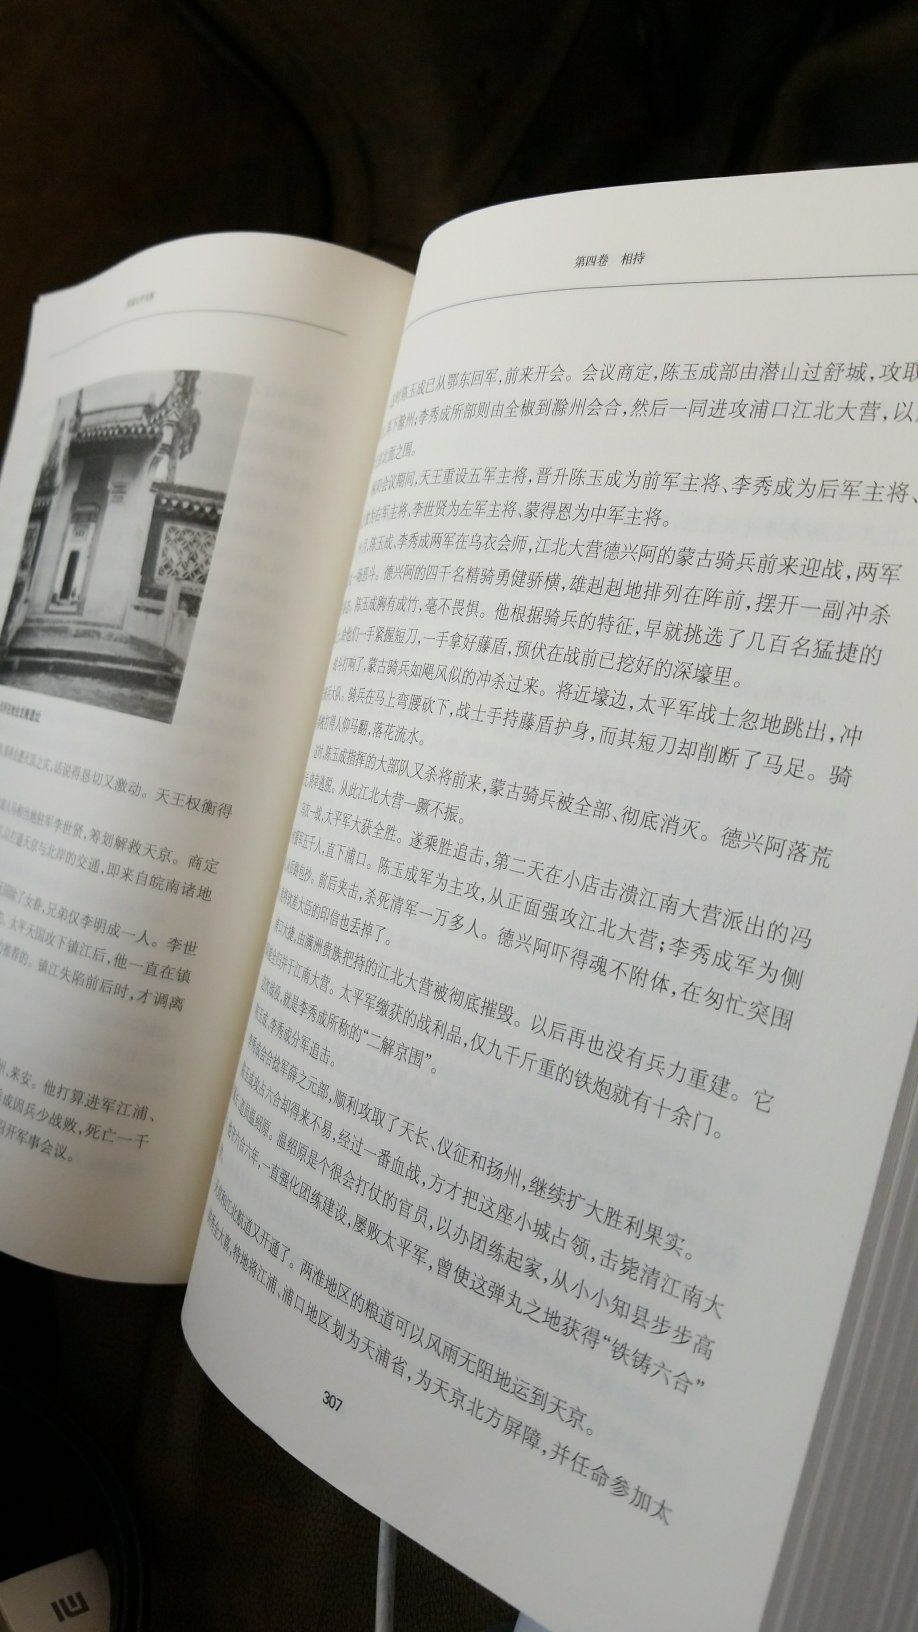 很好，内容详细，了解徐州会战的一本好书